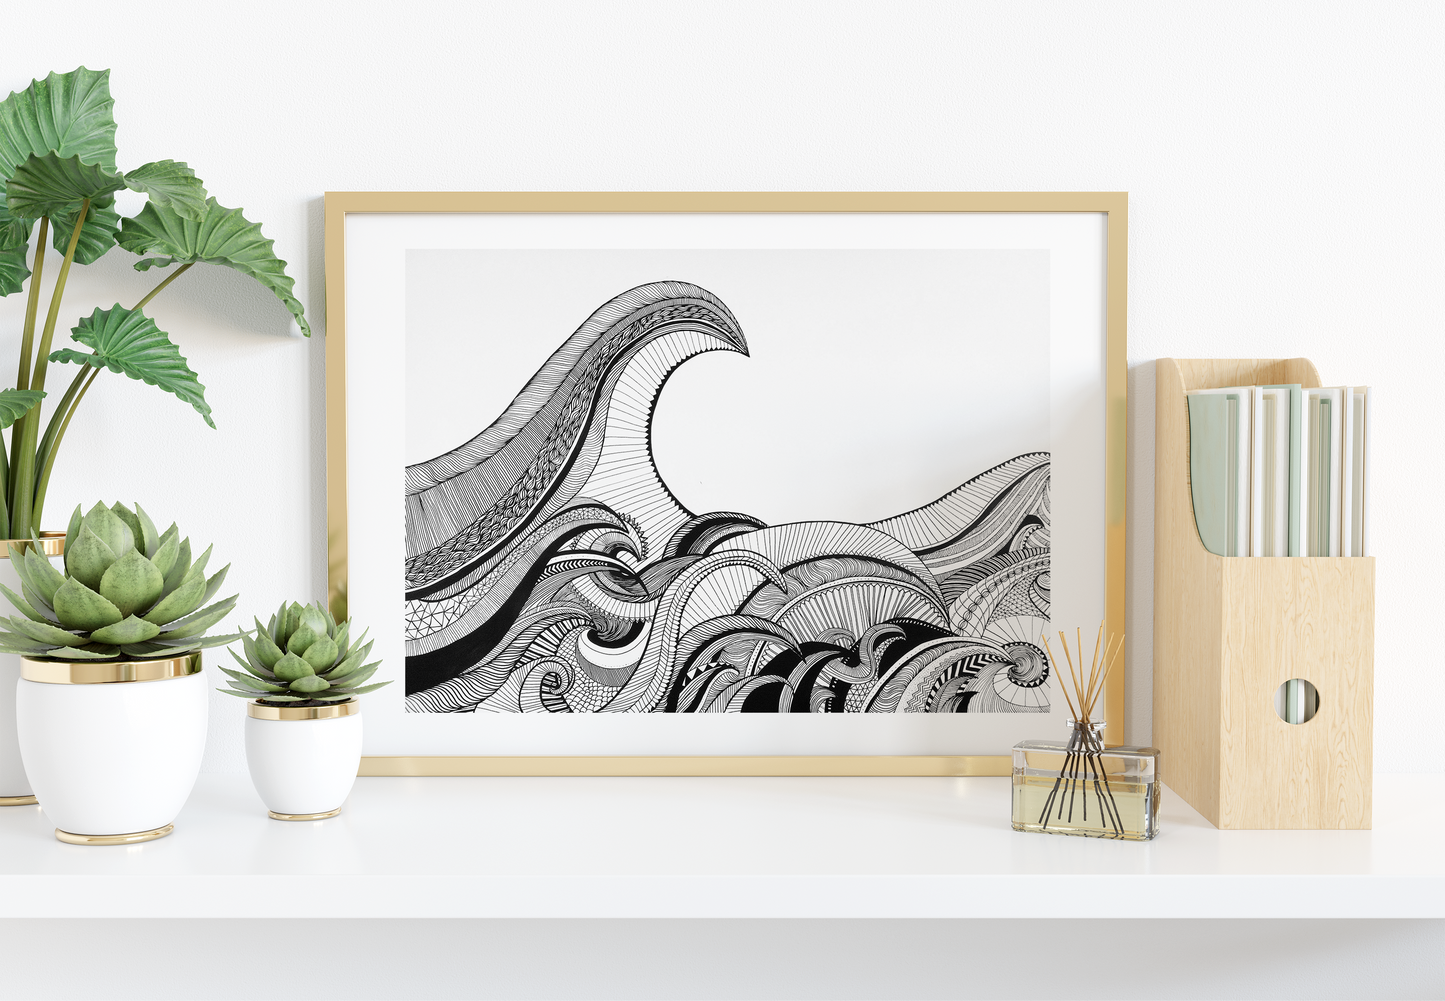 Las olas - Art print